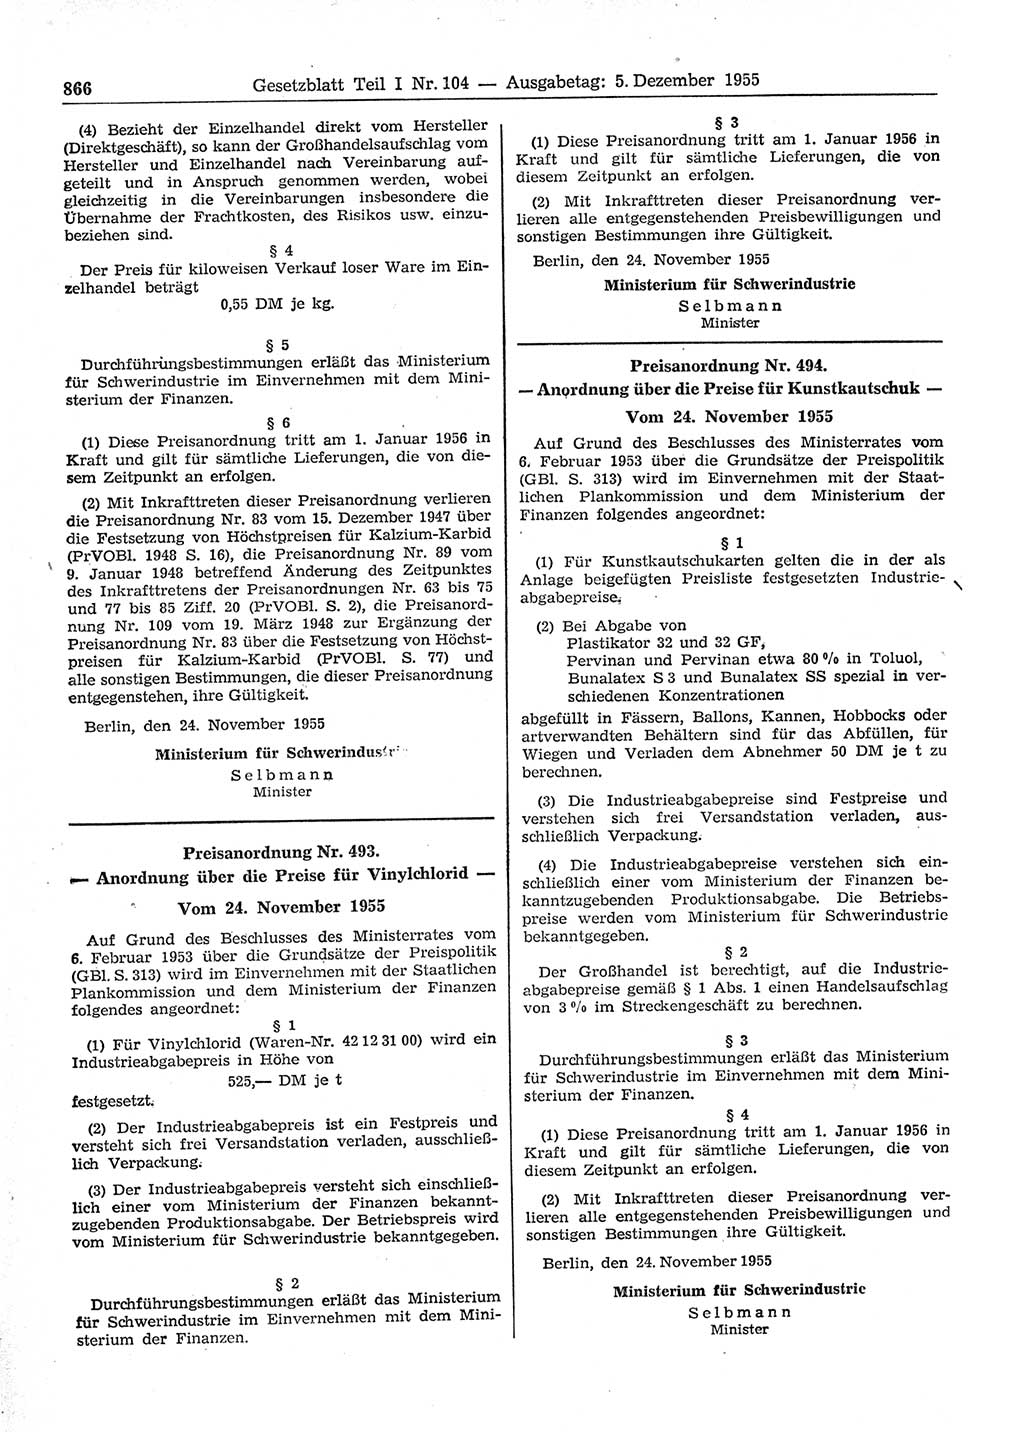 Gesetzblatt (GBl.) der Deutschen Demokratischen Republik (DDR) Teil Ⅰ 1955, Seite 866 (GBl. DDR Ⅰ 1955, S. 866)